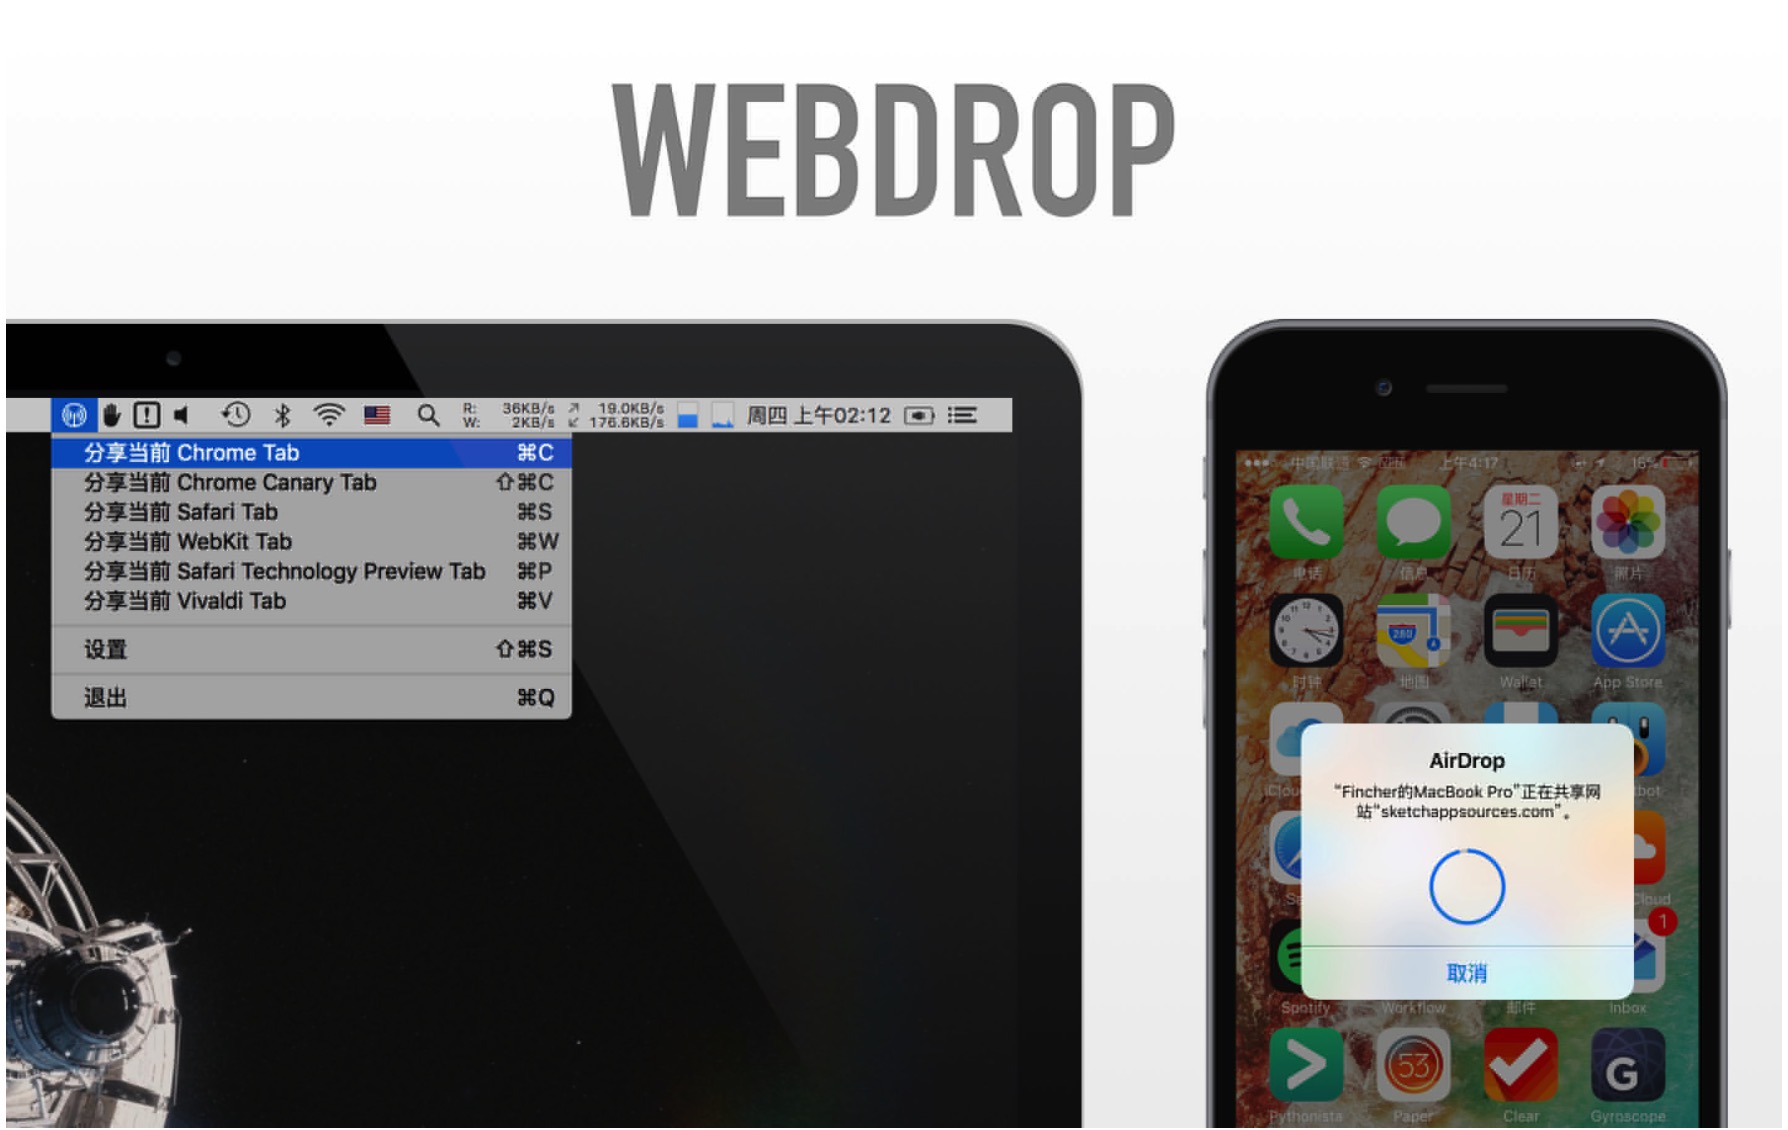 WebDrop